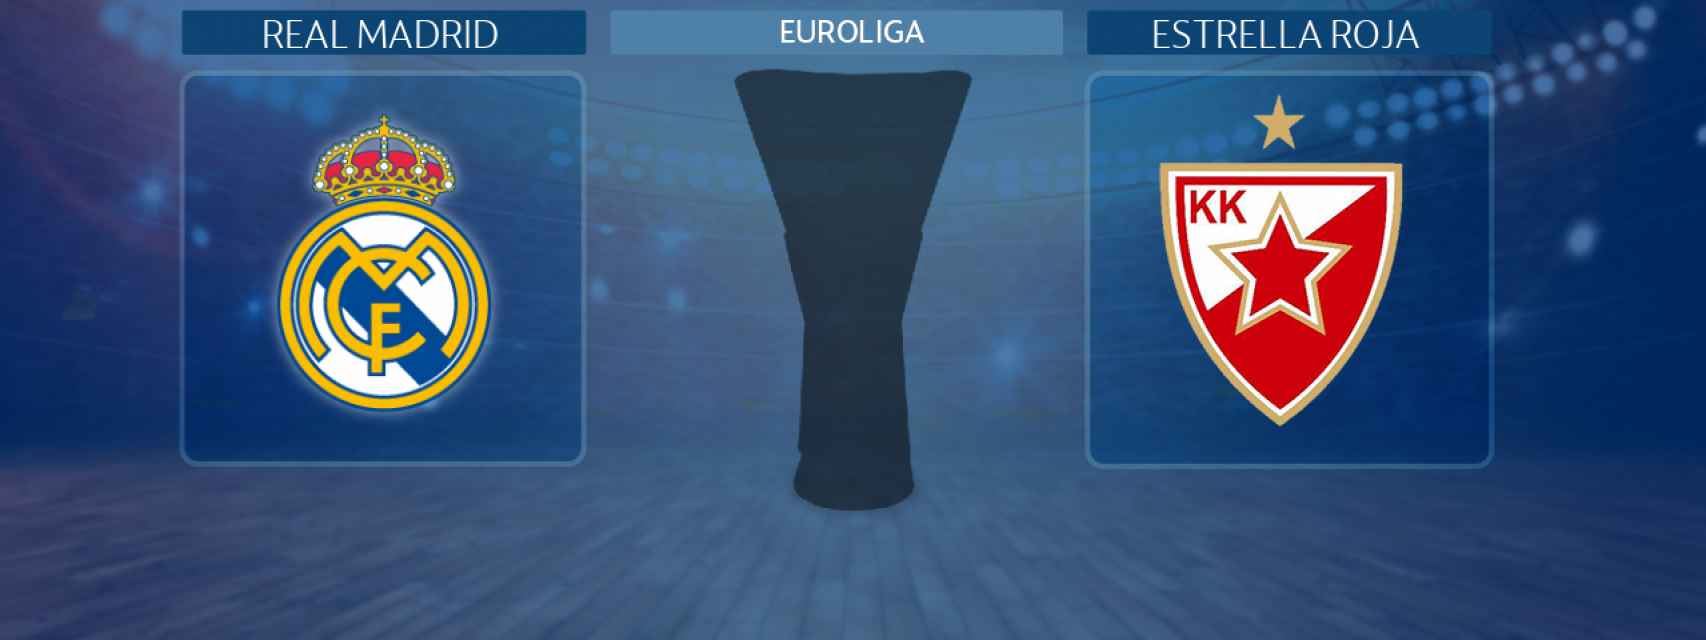 Real Madrid - Estrella Roja, partido de la Euroliga